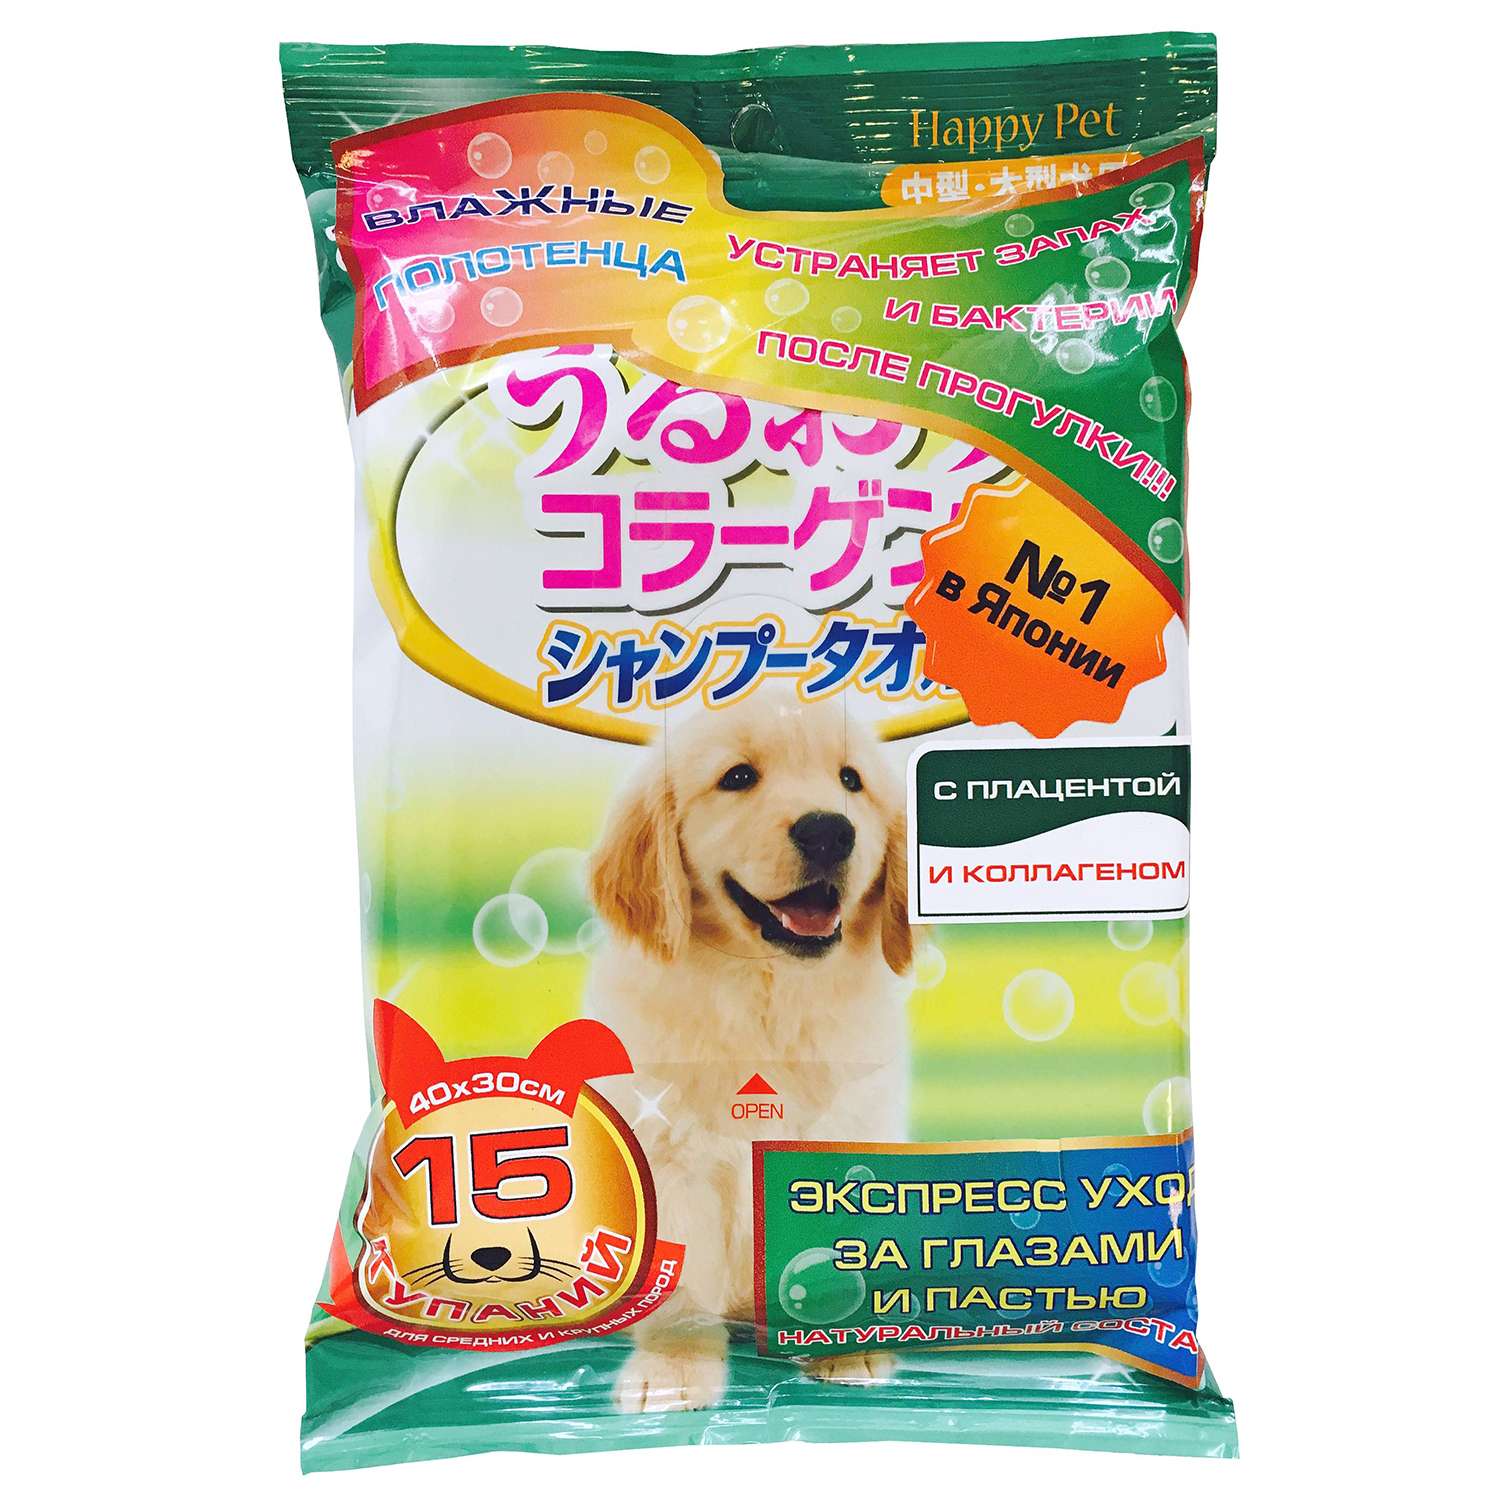 Полотенца для собак Happy Pet шампуневые с коллагеном и плацентой 15шт - фото 1